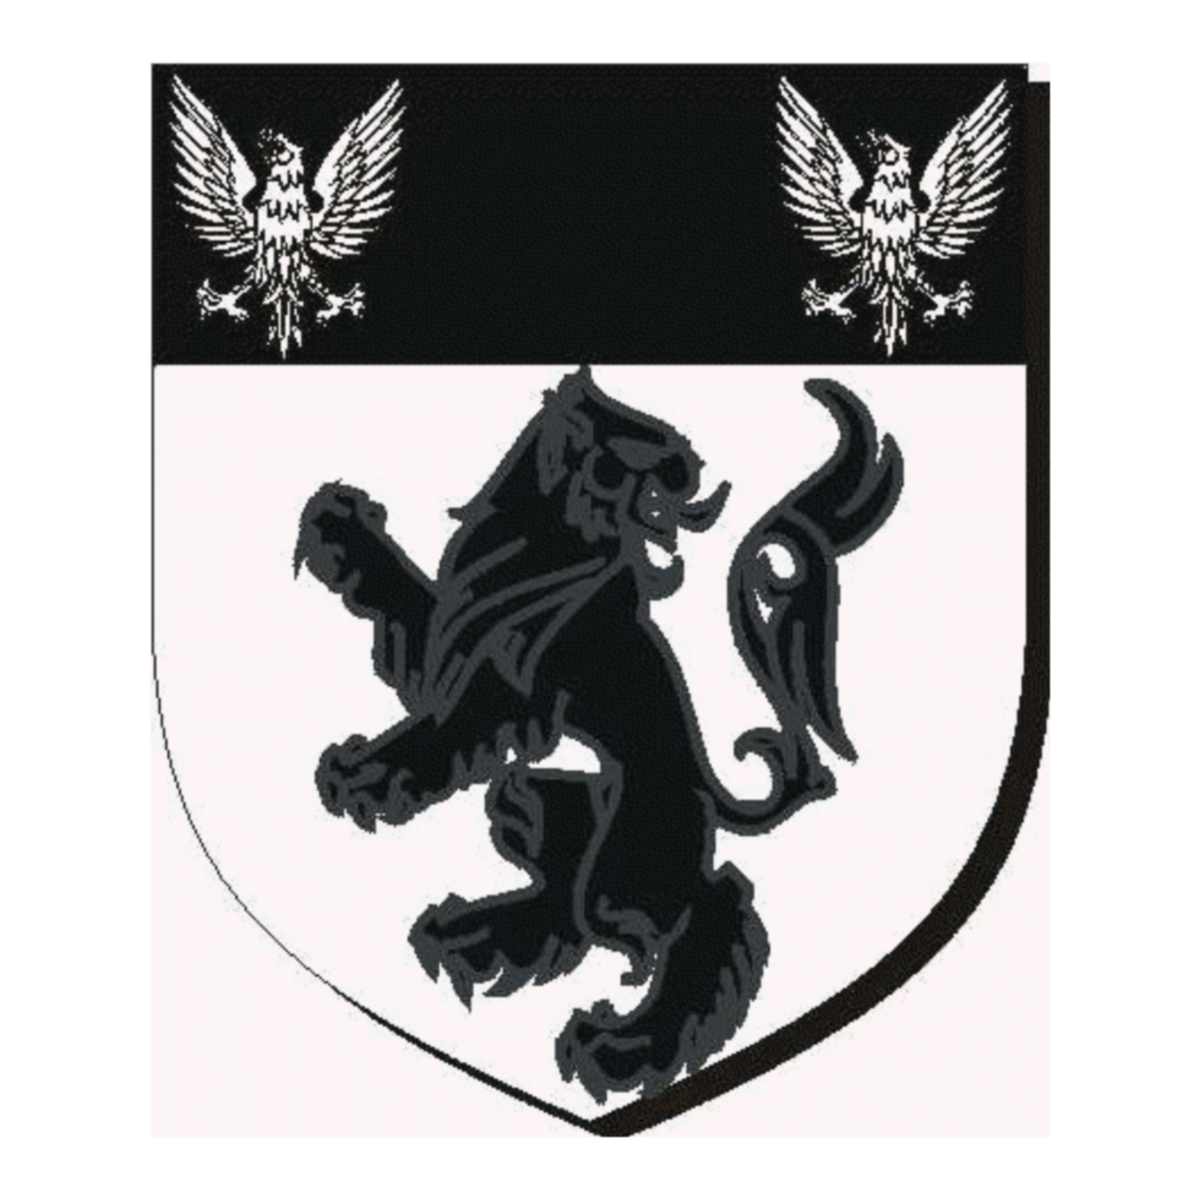 Wappen der FamilieMoss